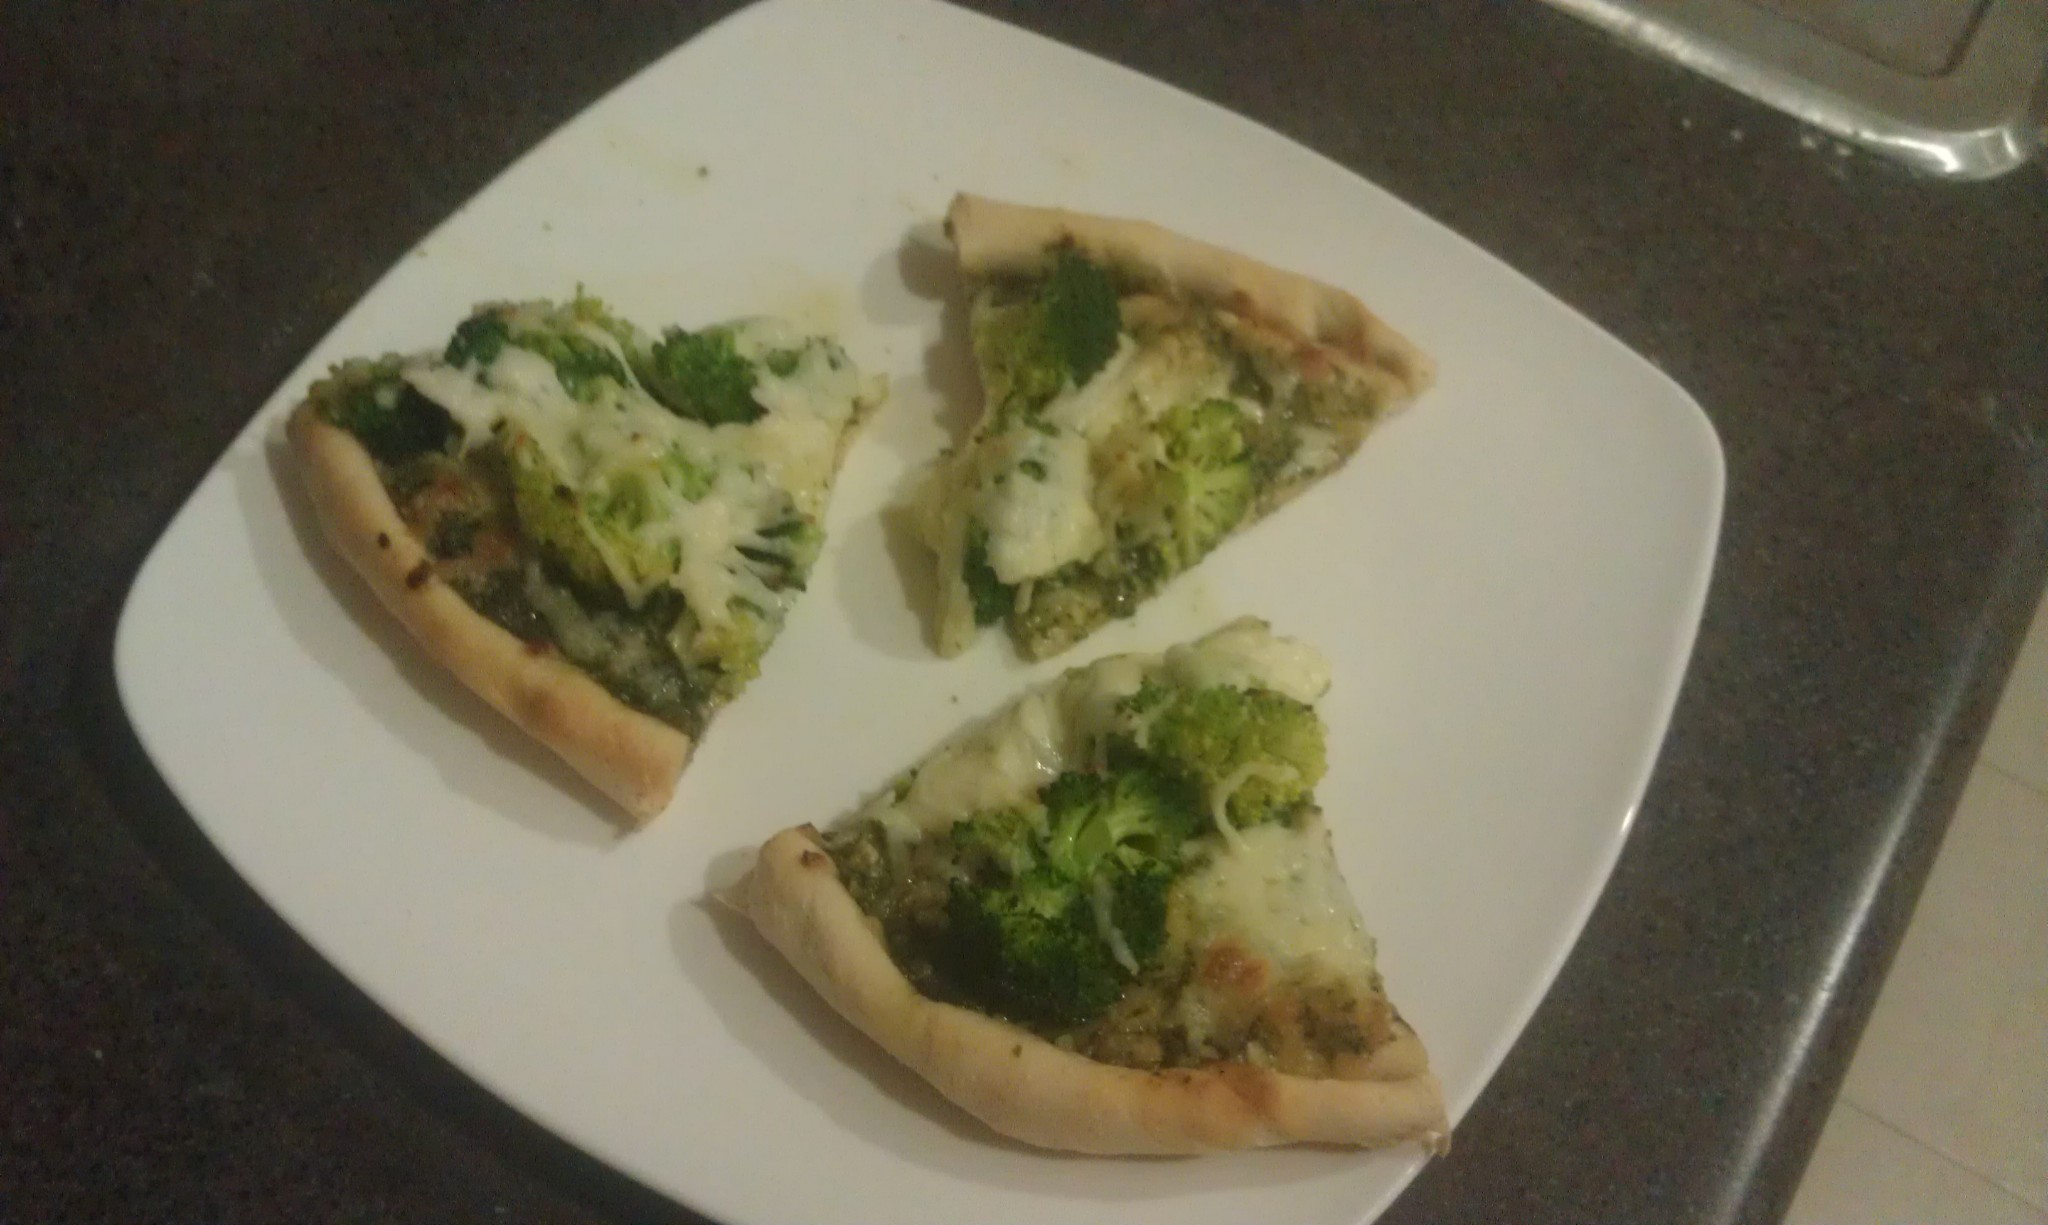 Pesto Pizza with Broccoli